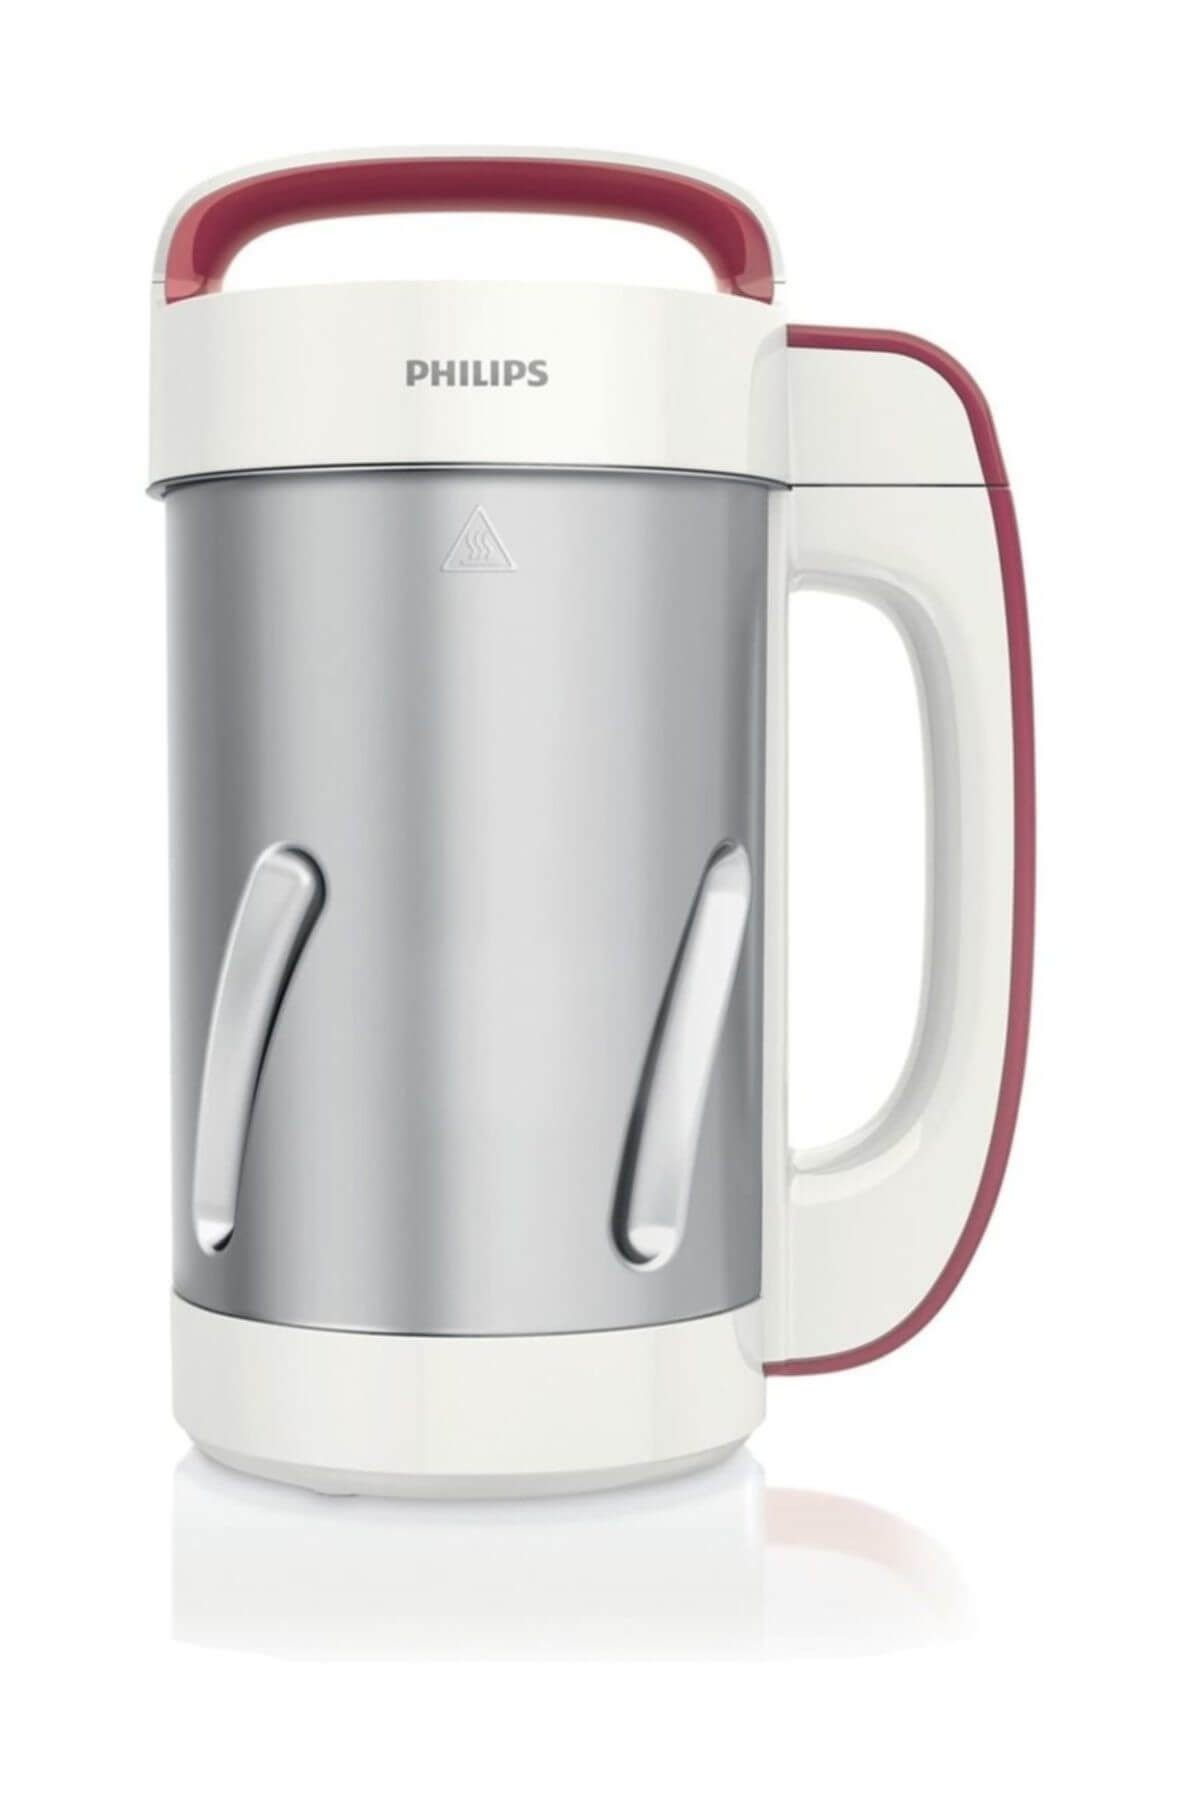 Philips Viva Collection HR2200/80 Çorba Ustası